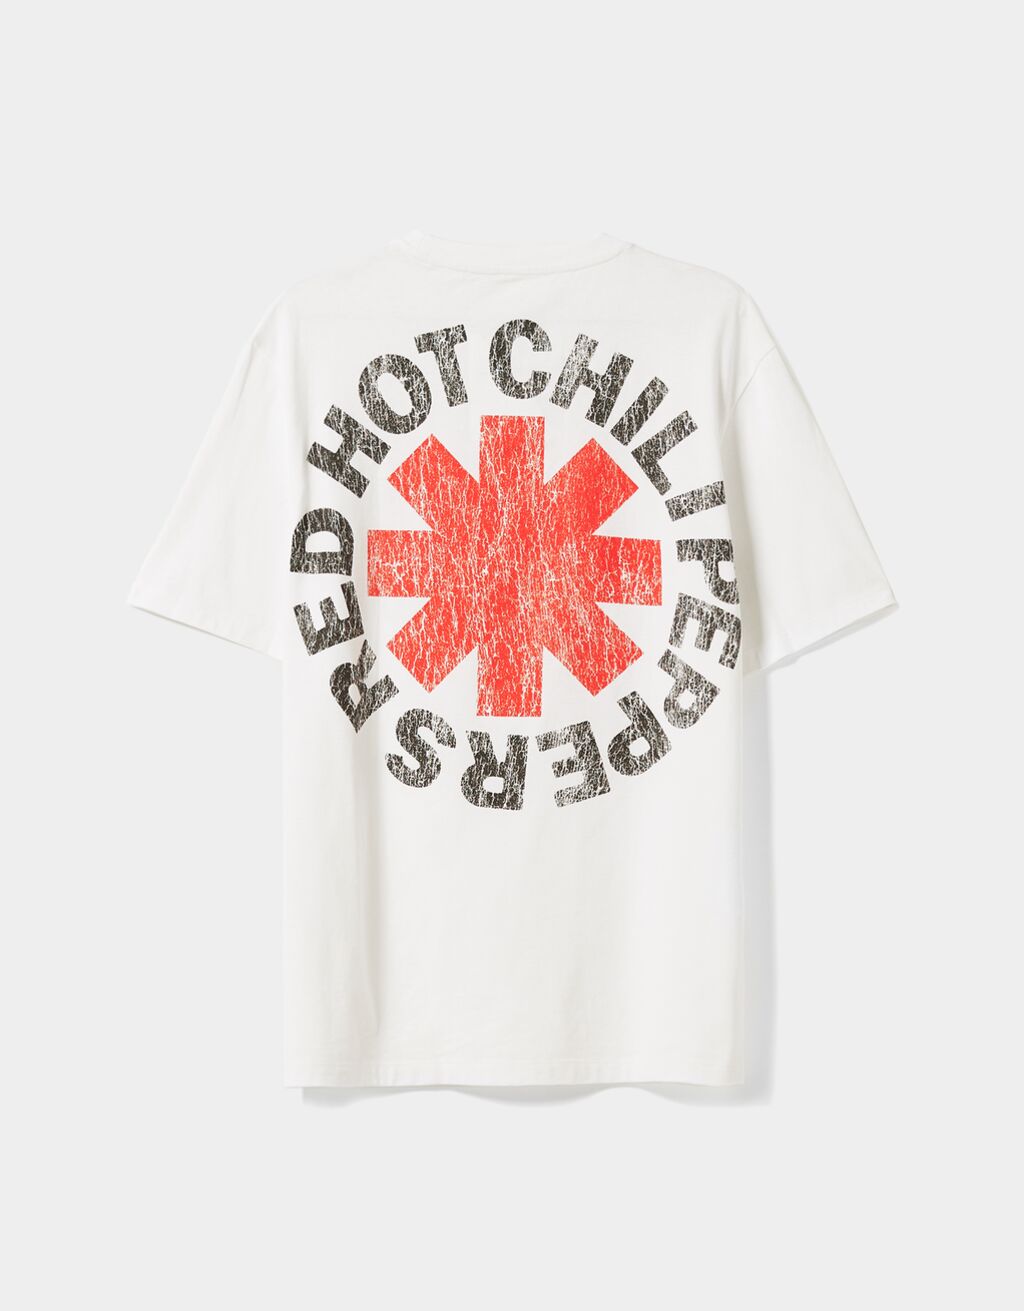 Tričko Red Hot Chili Peppers regular fit s krátkými rukávy